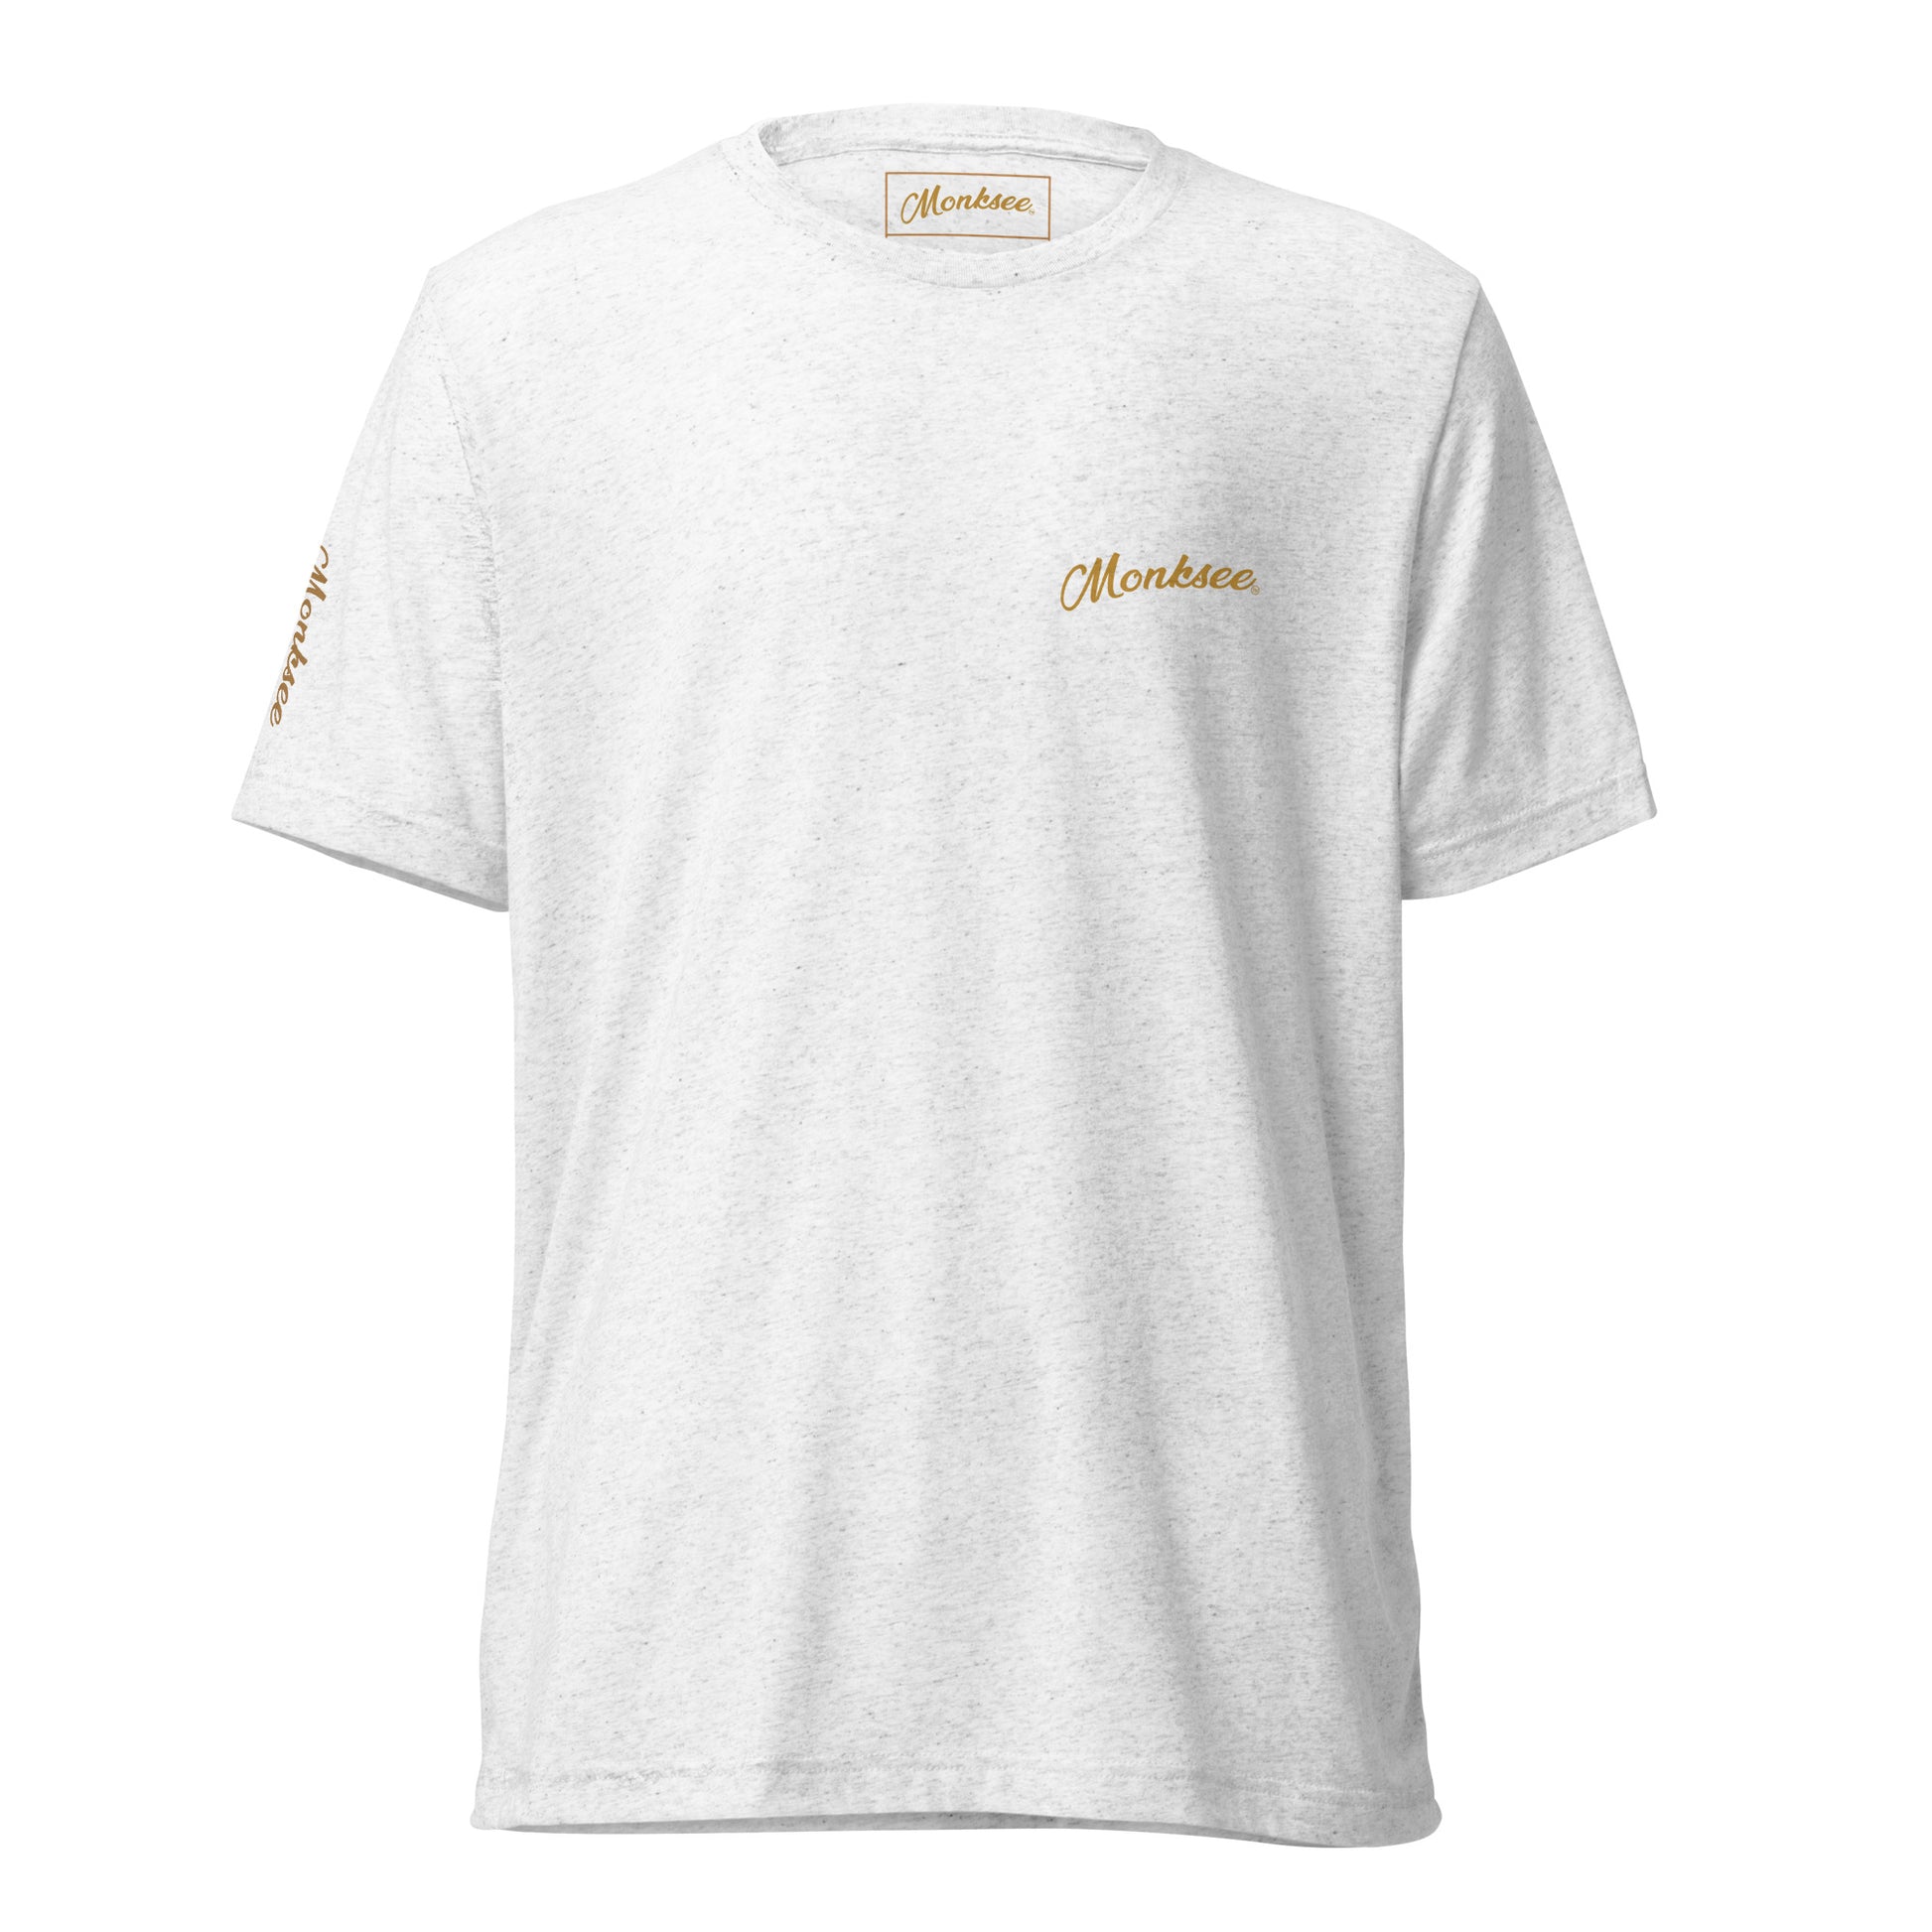 Gold Digger t-shirt.